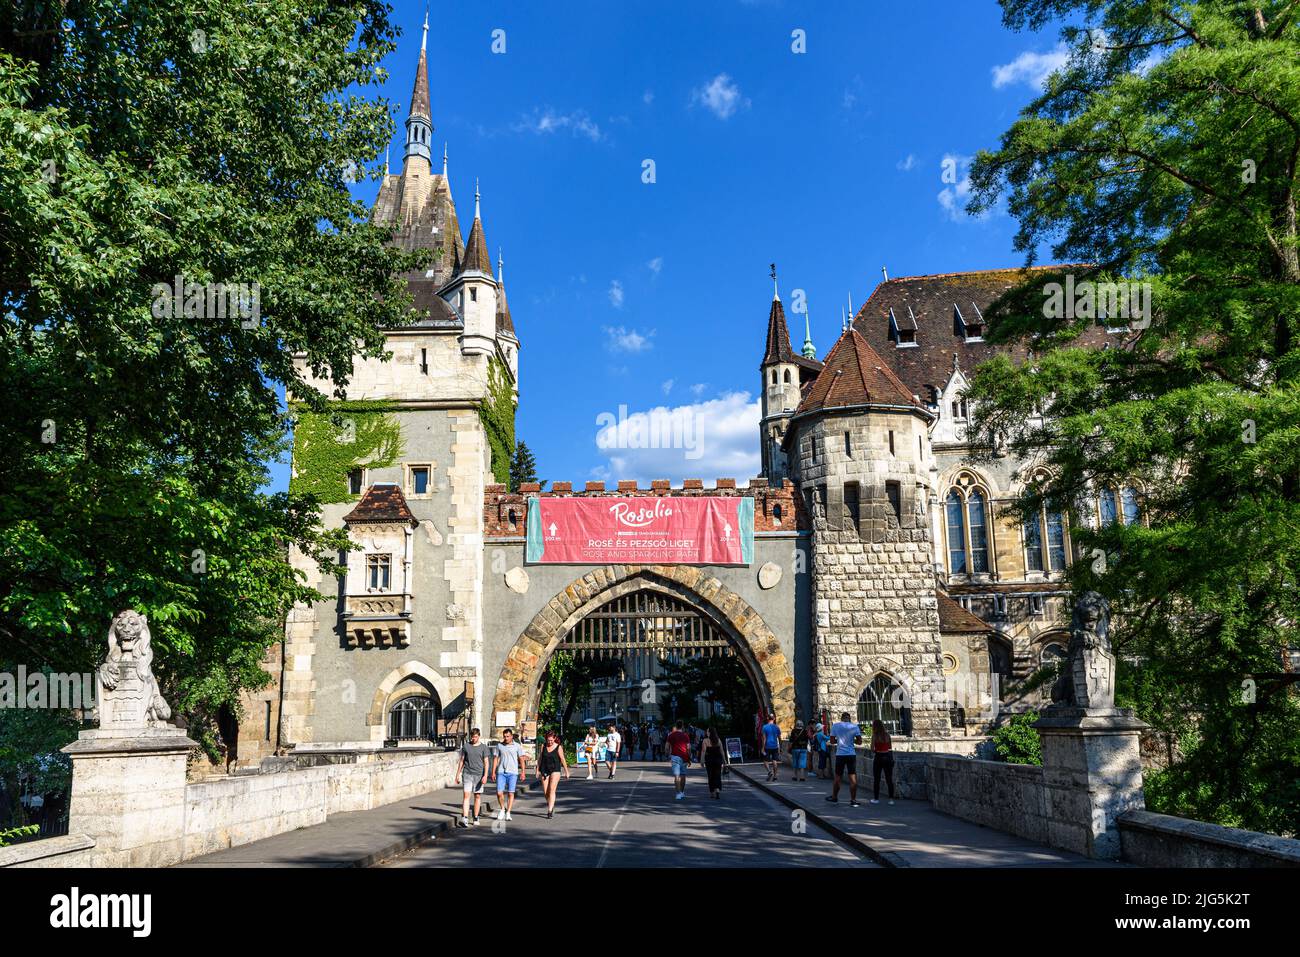 L'entrée du château de Vajdahunyad dans le parc de la ville de Budapest Banque D'Images